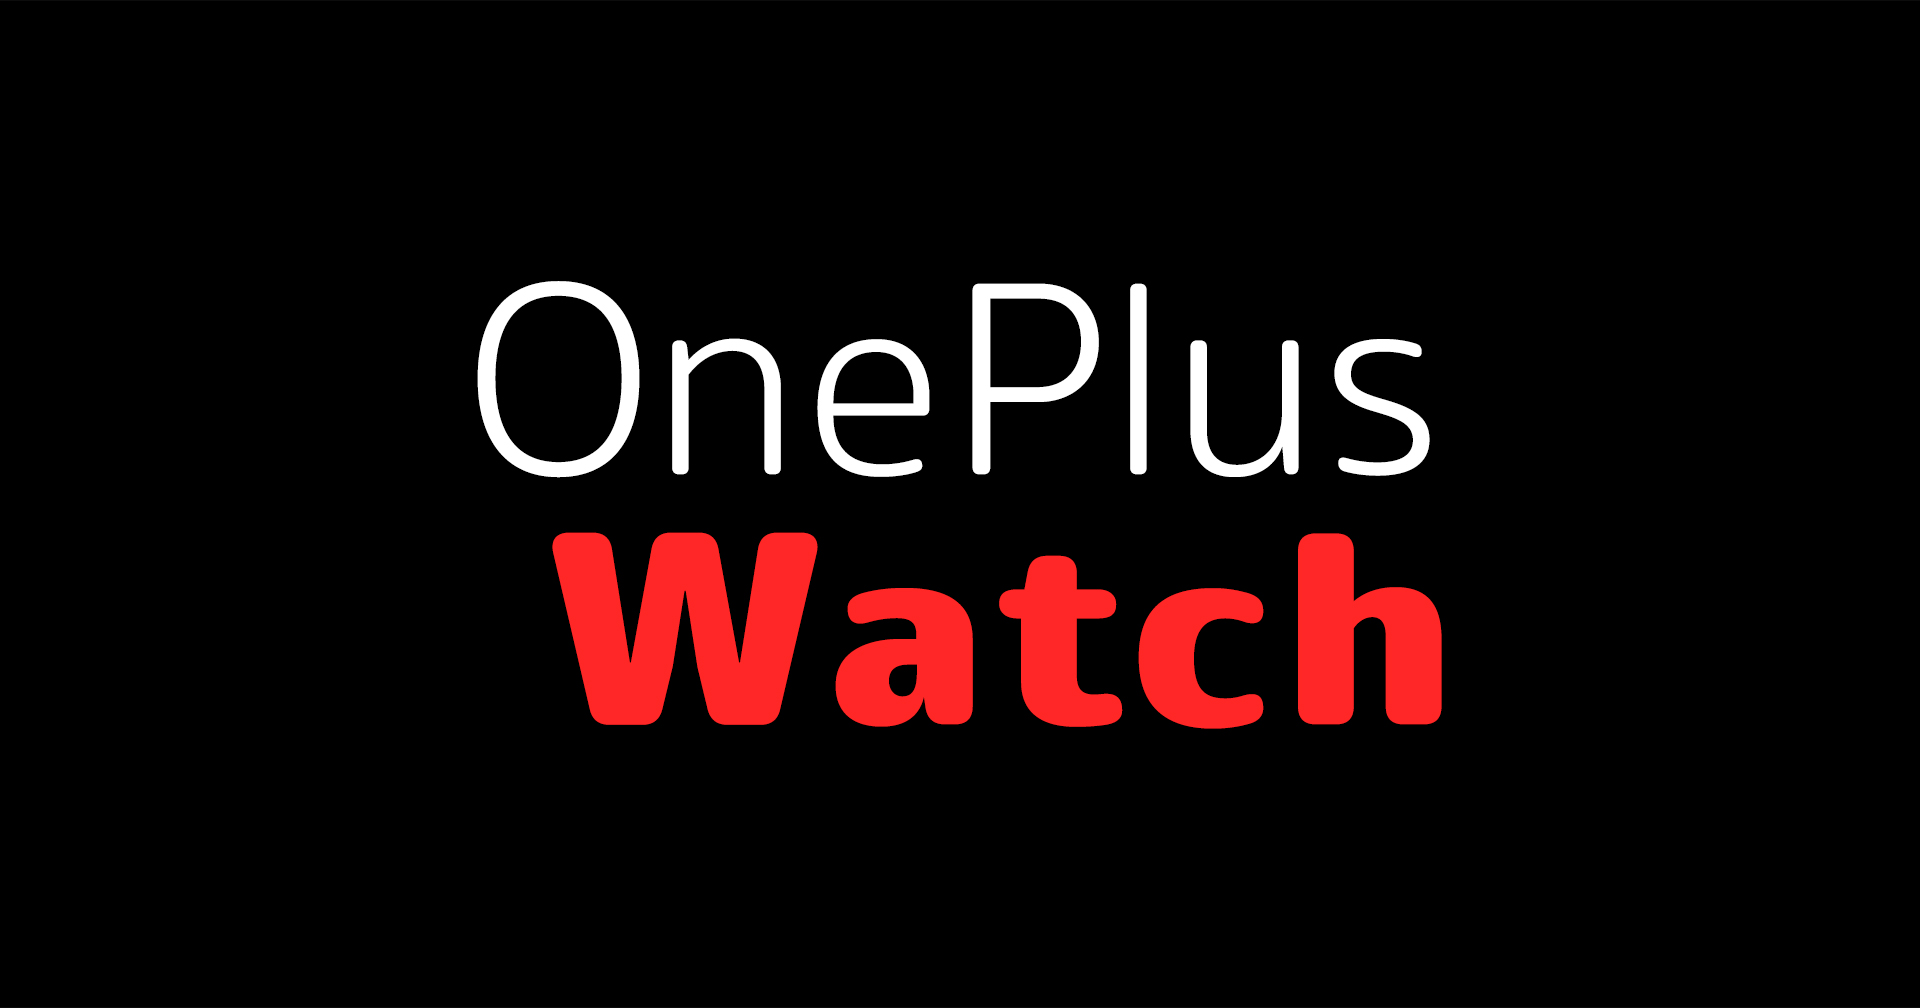 สมาร์ตวอตช์ตัวแรกจาก OnePlus เตรียมเปิดตัวพร้อมกับ OnePlus 9 Series วันที่ 23 มีนาคมนี้